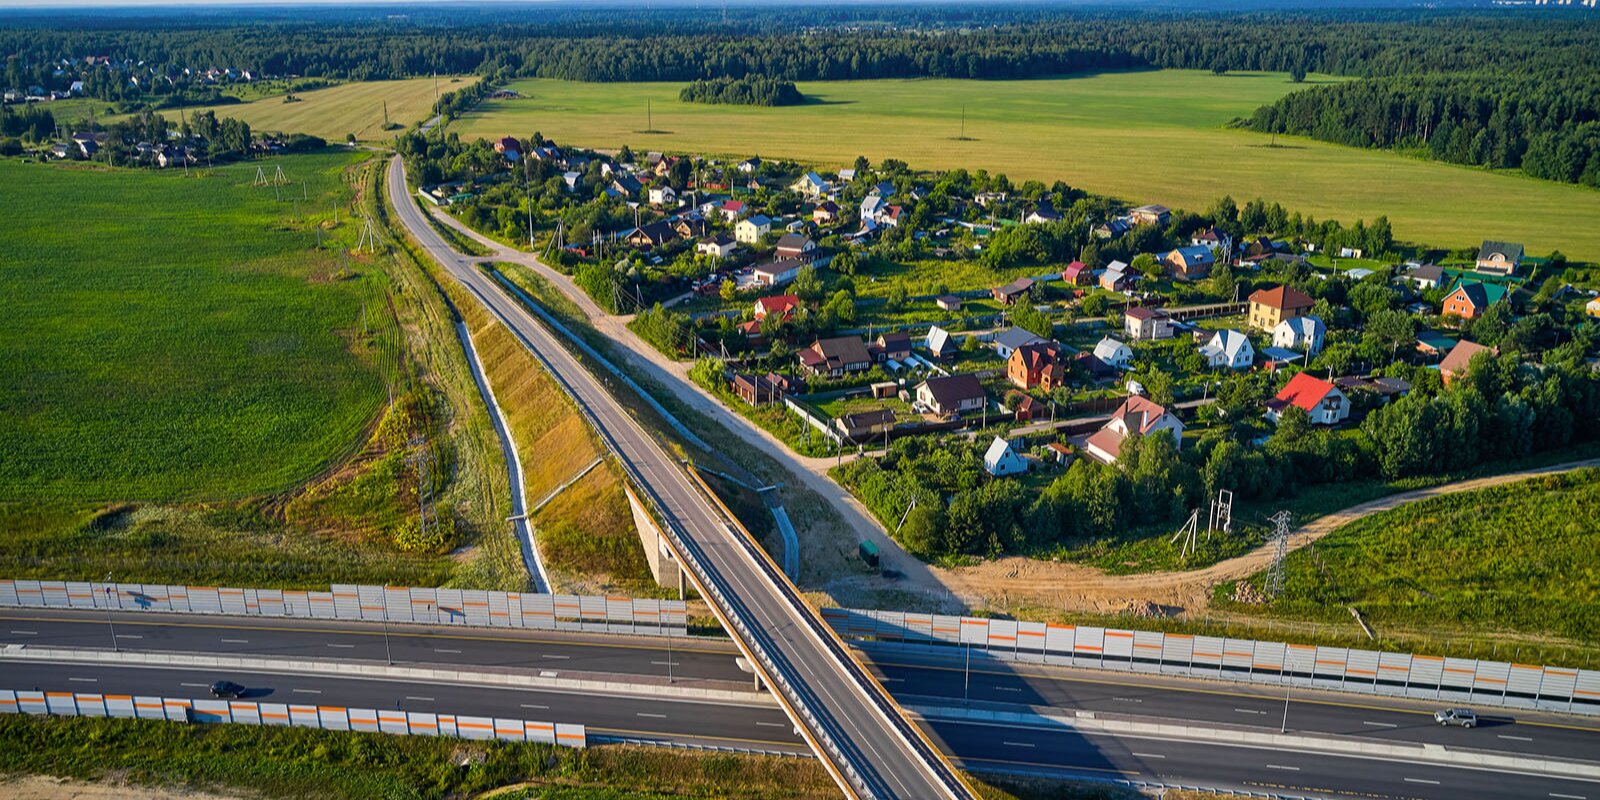 К садовым товариществам проложат путь: более 10 километров дорог построят в Мосрентгене, фото